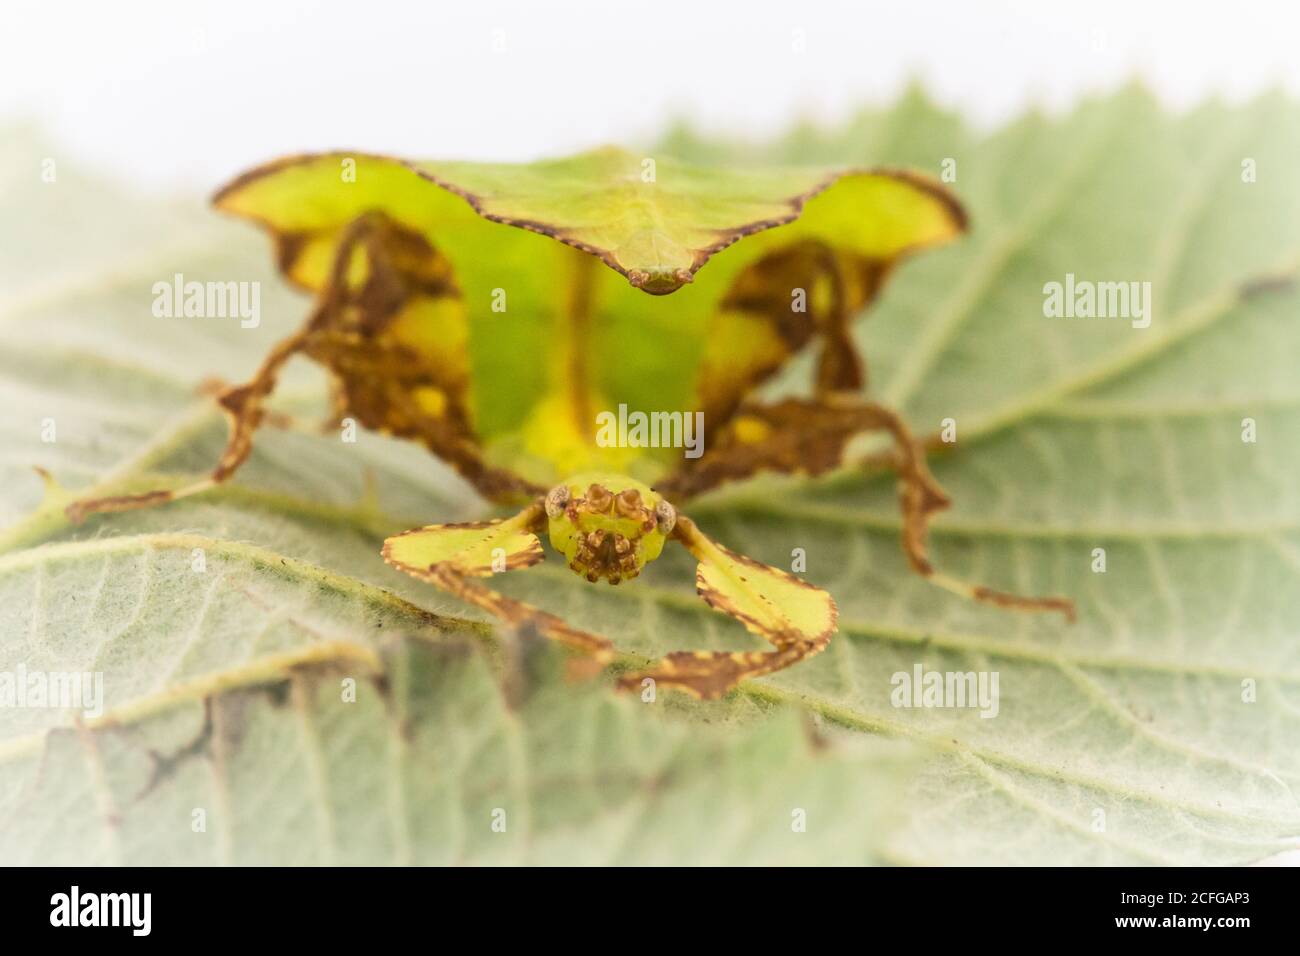 L'insecte de la feuille géante de juvenille (Phyllium giganteum) essaie de se cacher contre la lame Banque D'Images